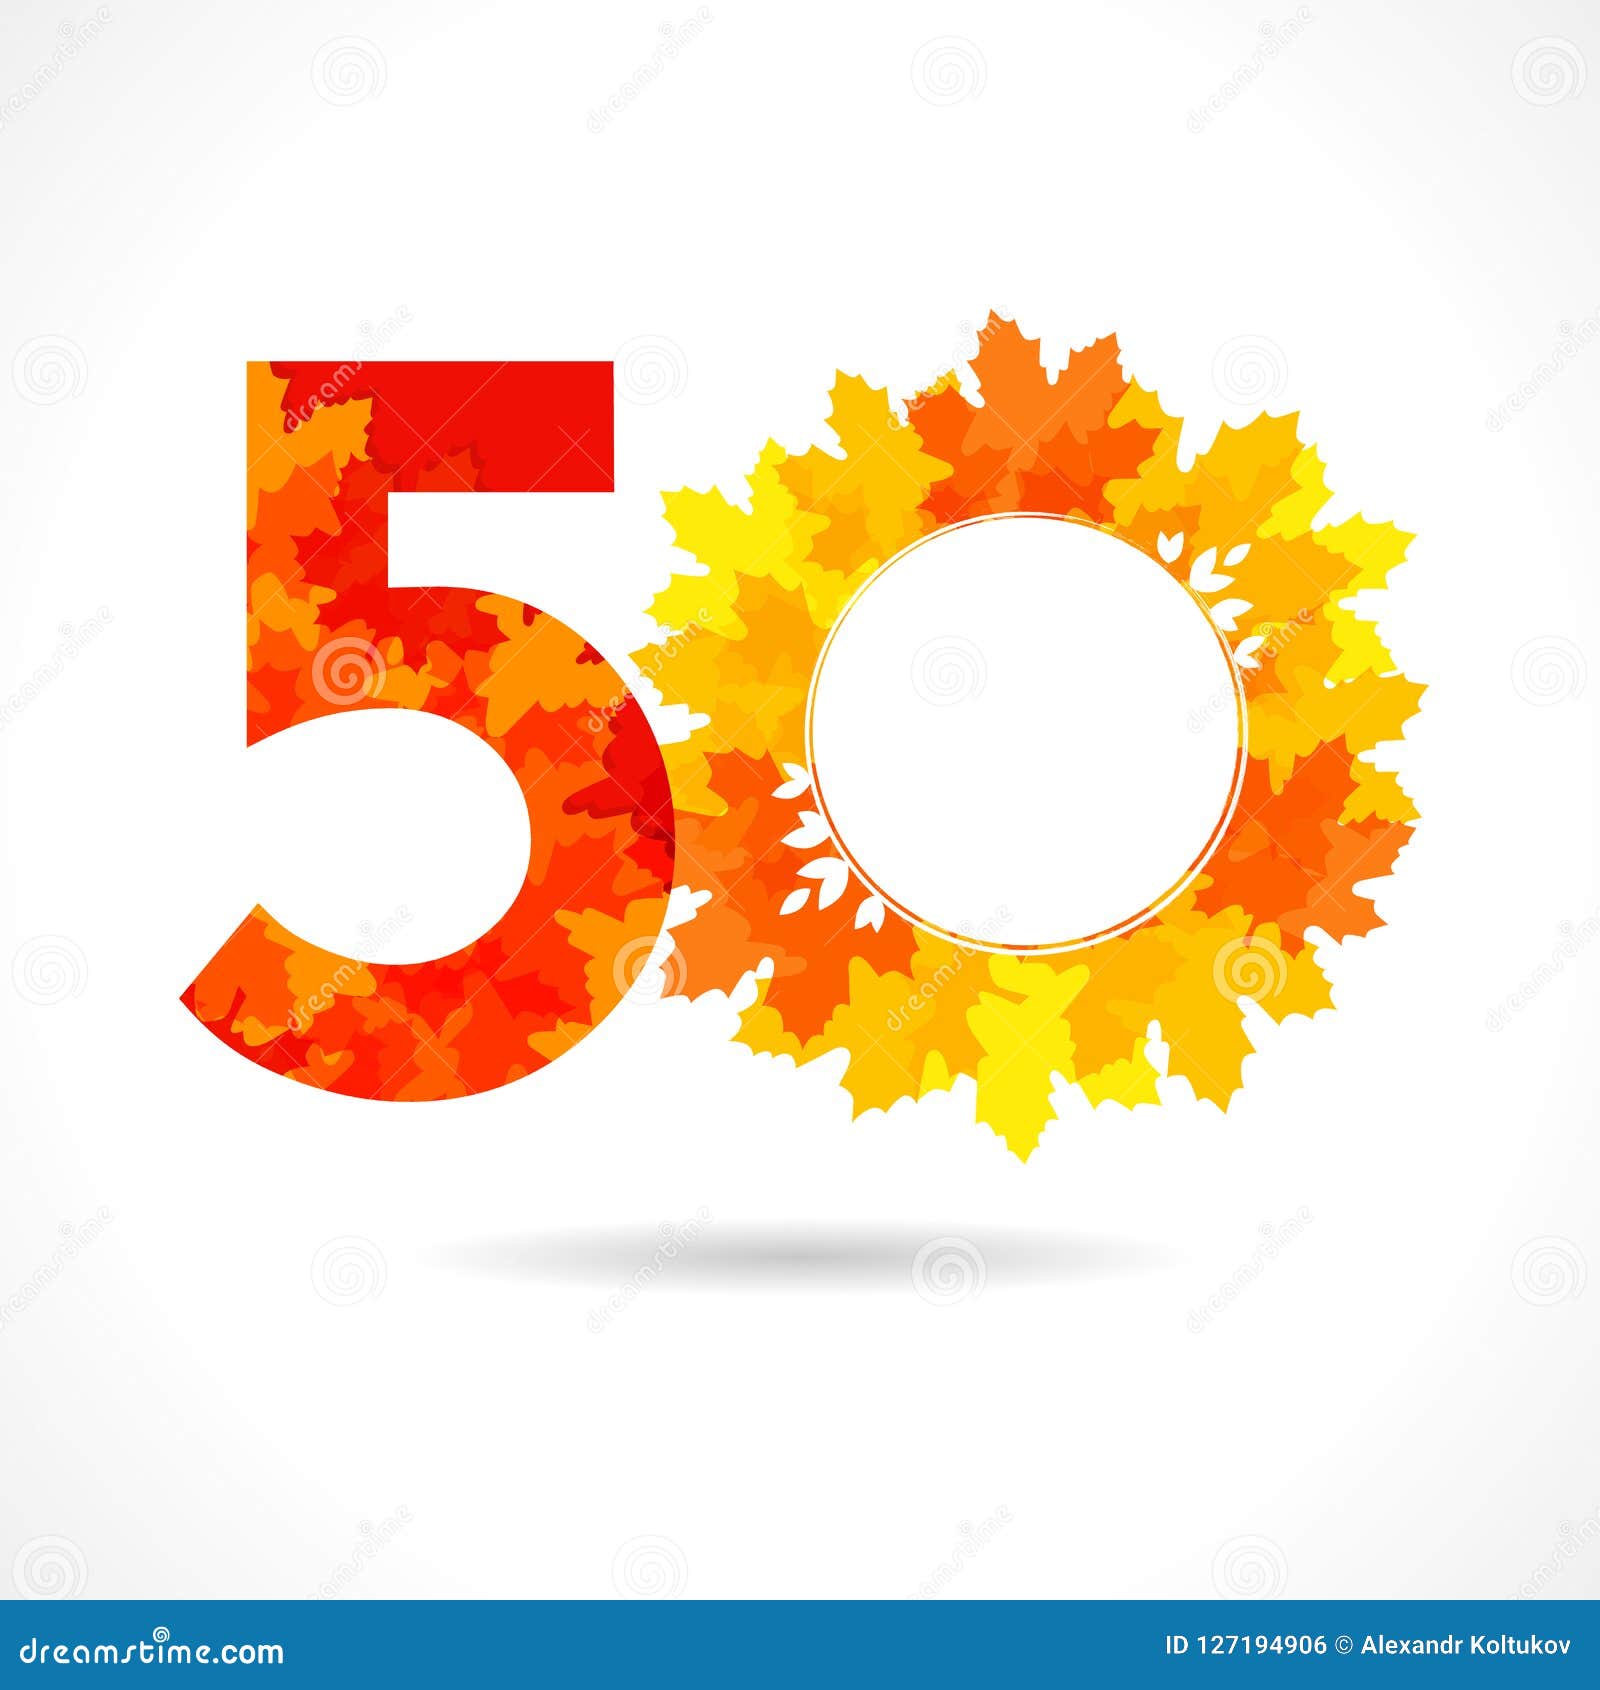 50 congratulating sesonal emblem